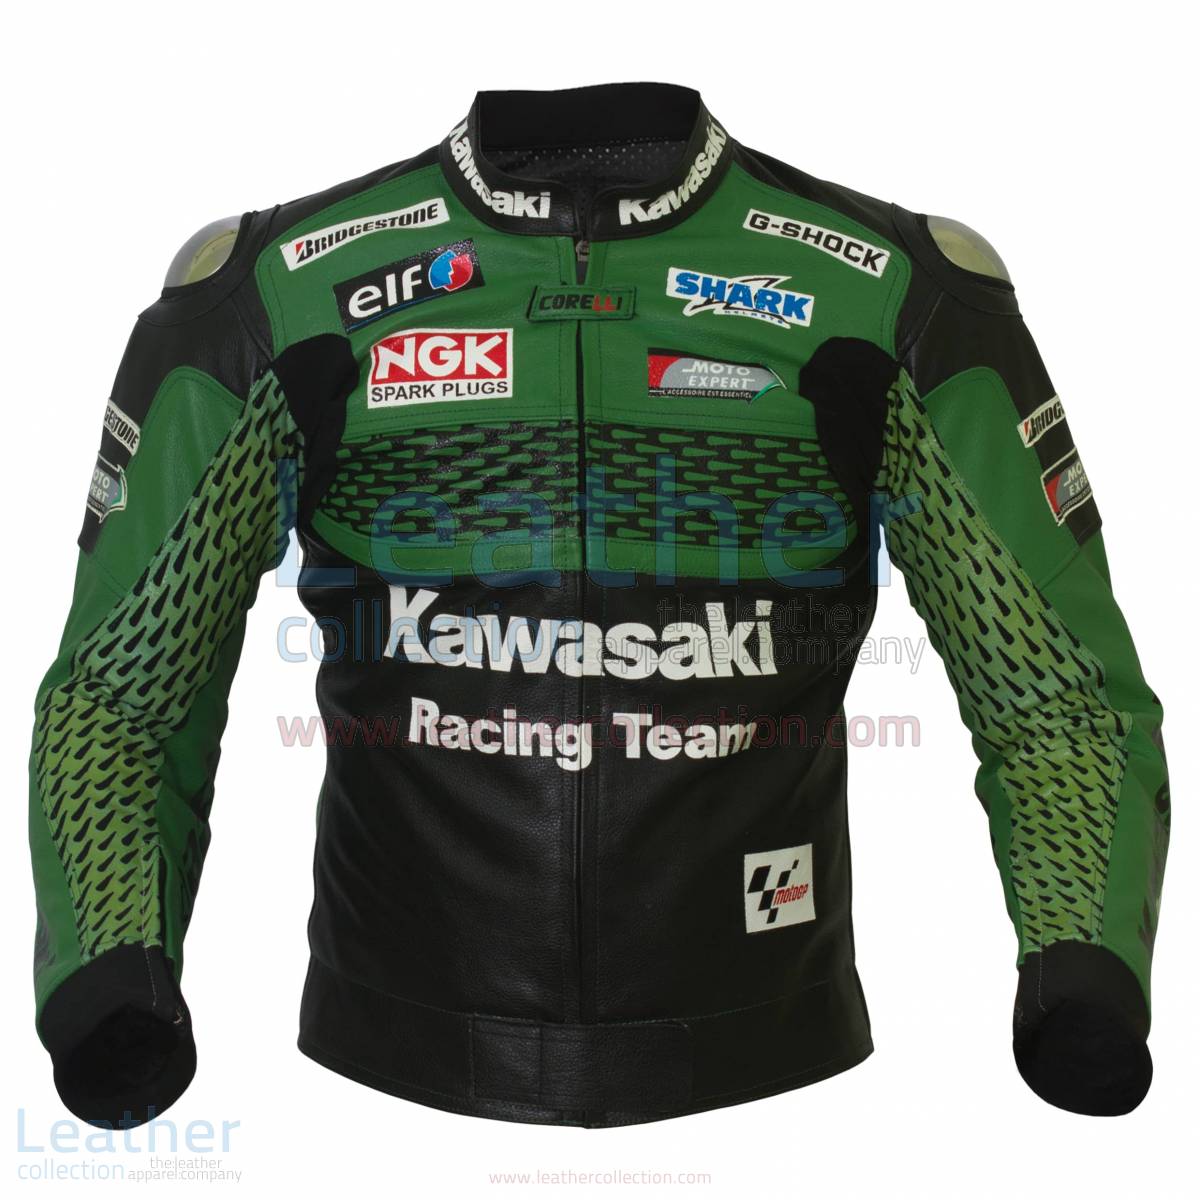 Kawasaki Racing Team Leather Jacket – Kawasaki Jacket